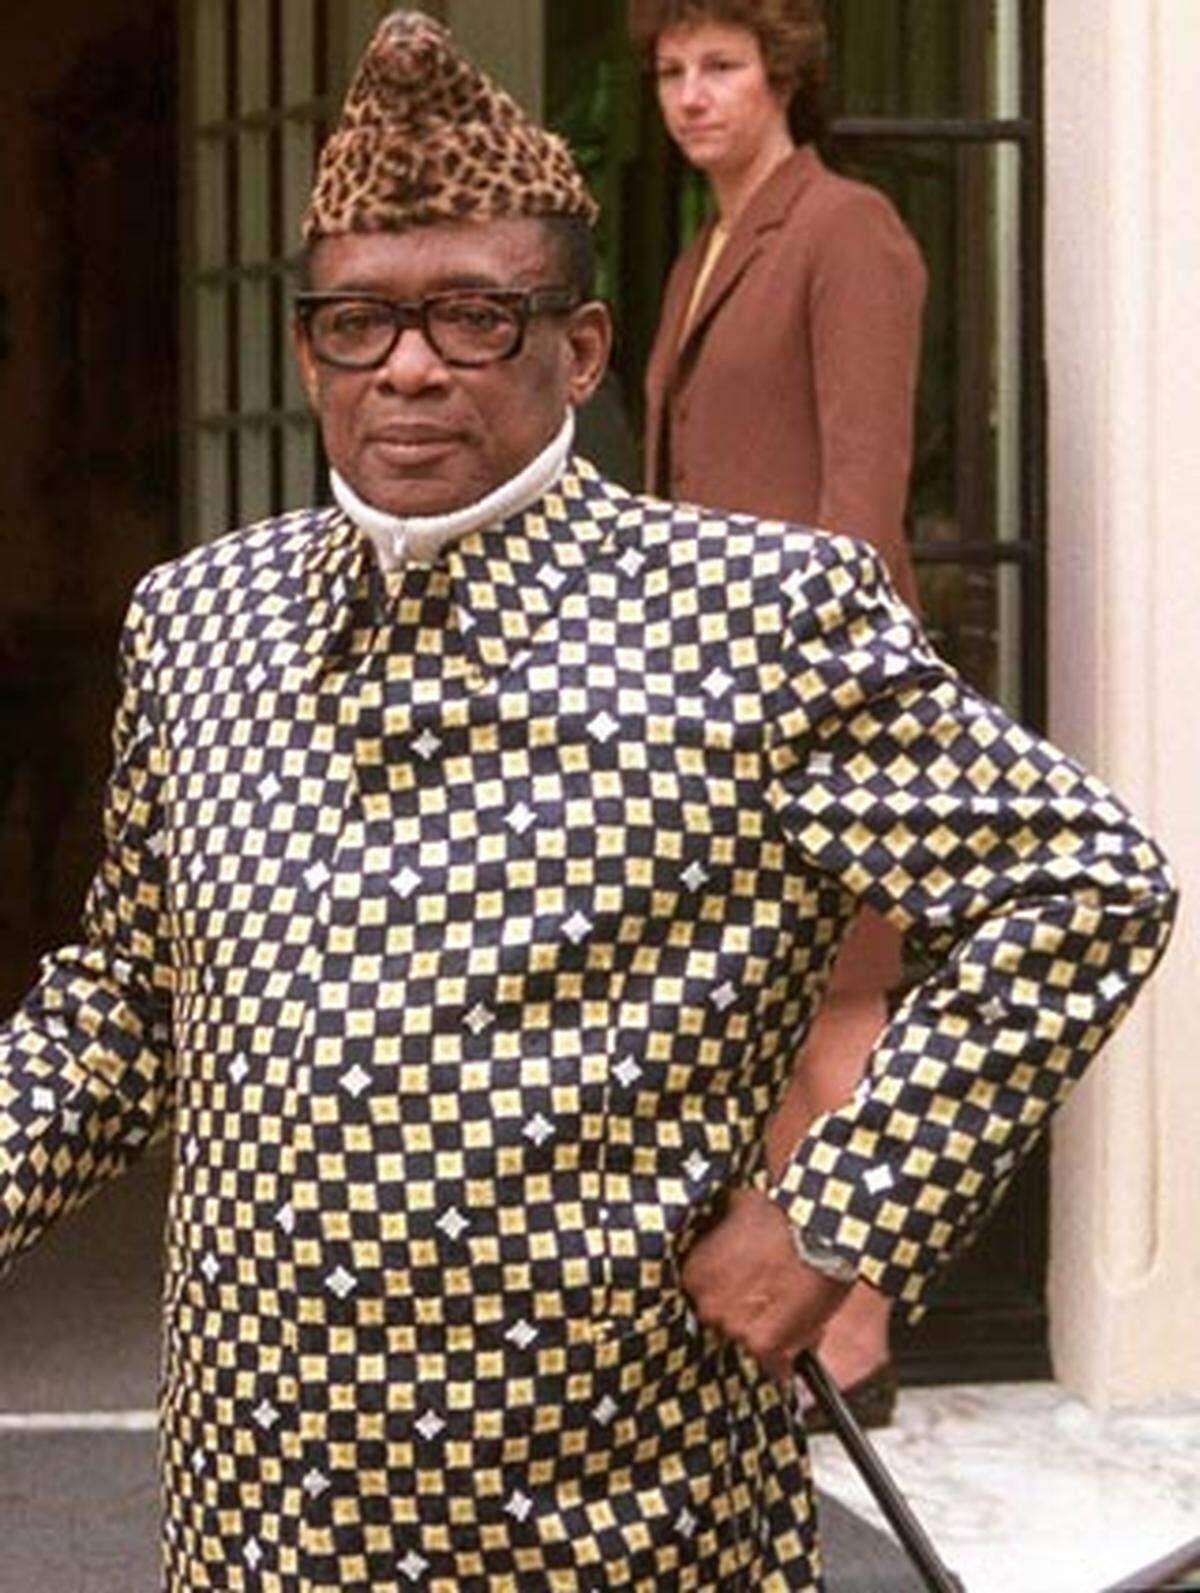 Mobutu Sese Seko kam 1965 durch einen Staatsstreich an die Macht der heutigen Demokratischen Republik Kongo. Eine Kombination aus Gewalt, Korruption und der frühzeitigen Ausschaltung von Oppositionellen sicherte seine Macht. Mobutu überzog das Land mit einer der längsten und grausamsten Diktaturen Afrikas. 1997 floh er vor Aufständischen ins Exil nach Marokko, wo er im selben Jahr an Krebs starb.